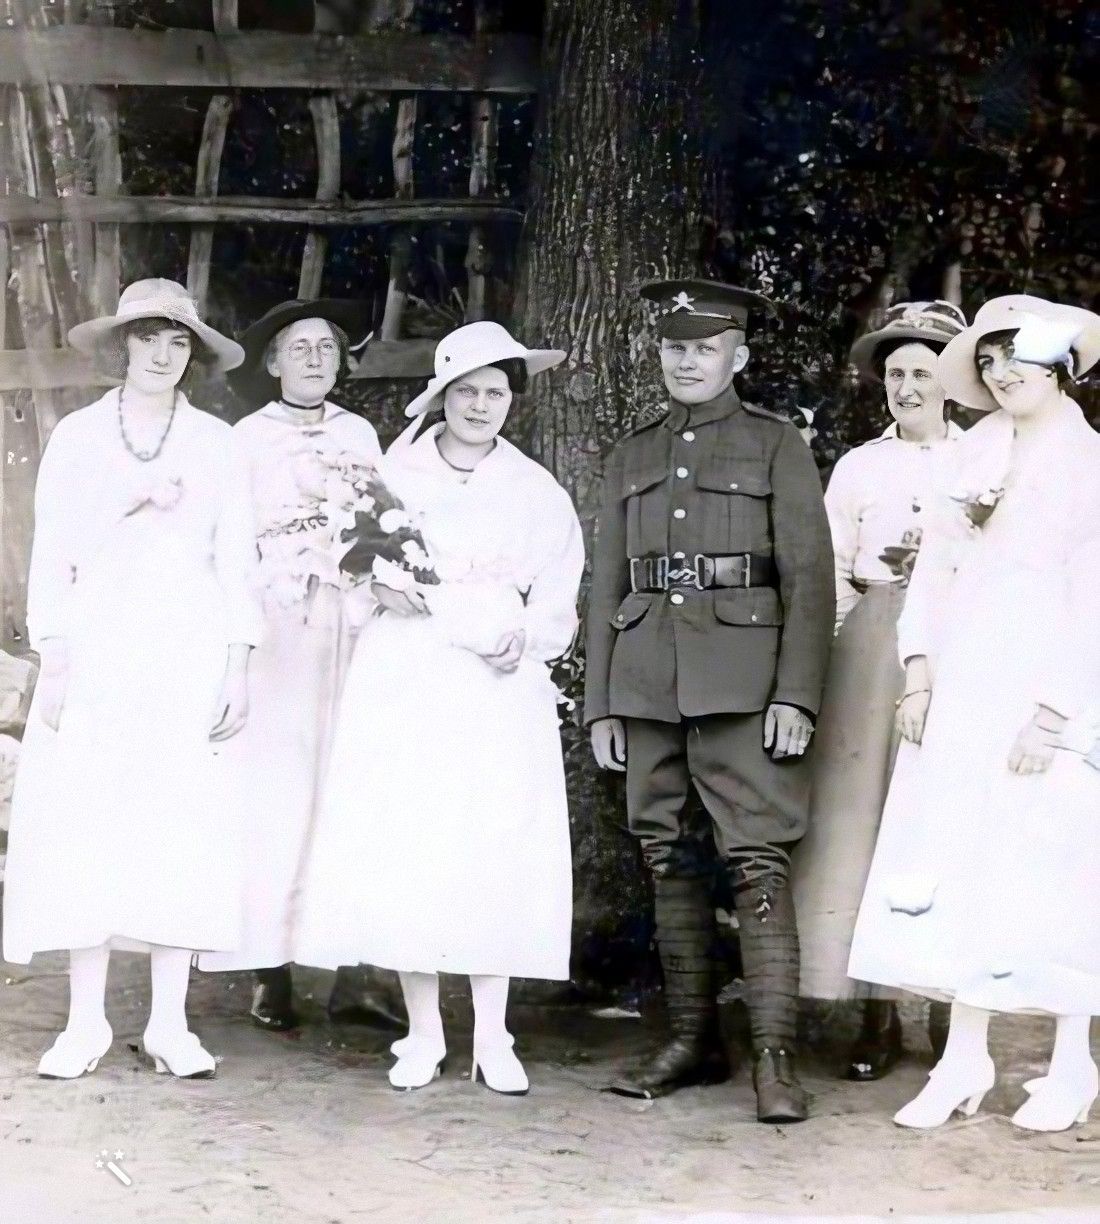 Maud und Bert an ihrem Hochzeitstag im Jahr 1917. Foto koloriert und verbessert mit MyHeritage